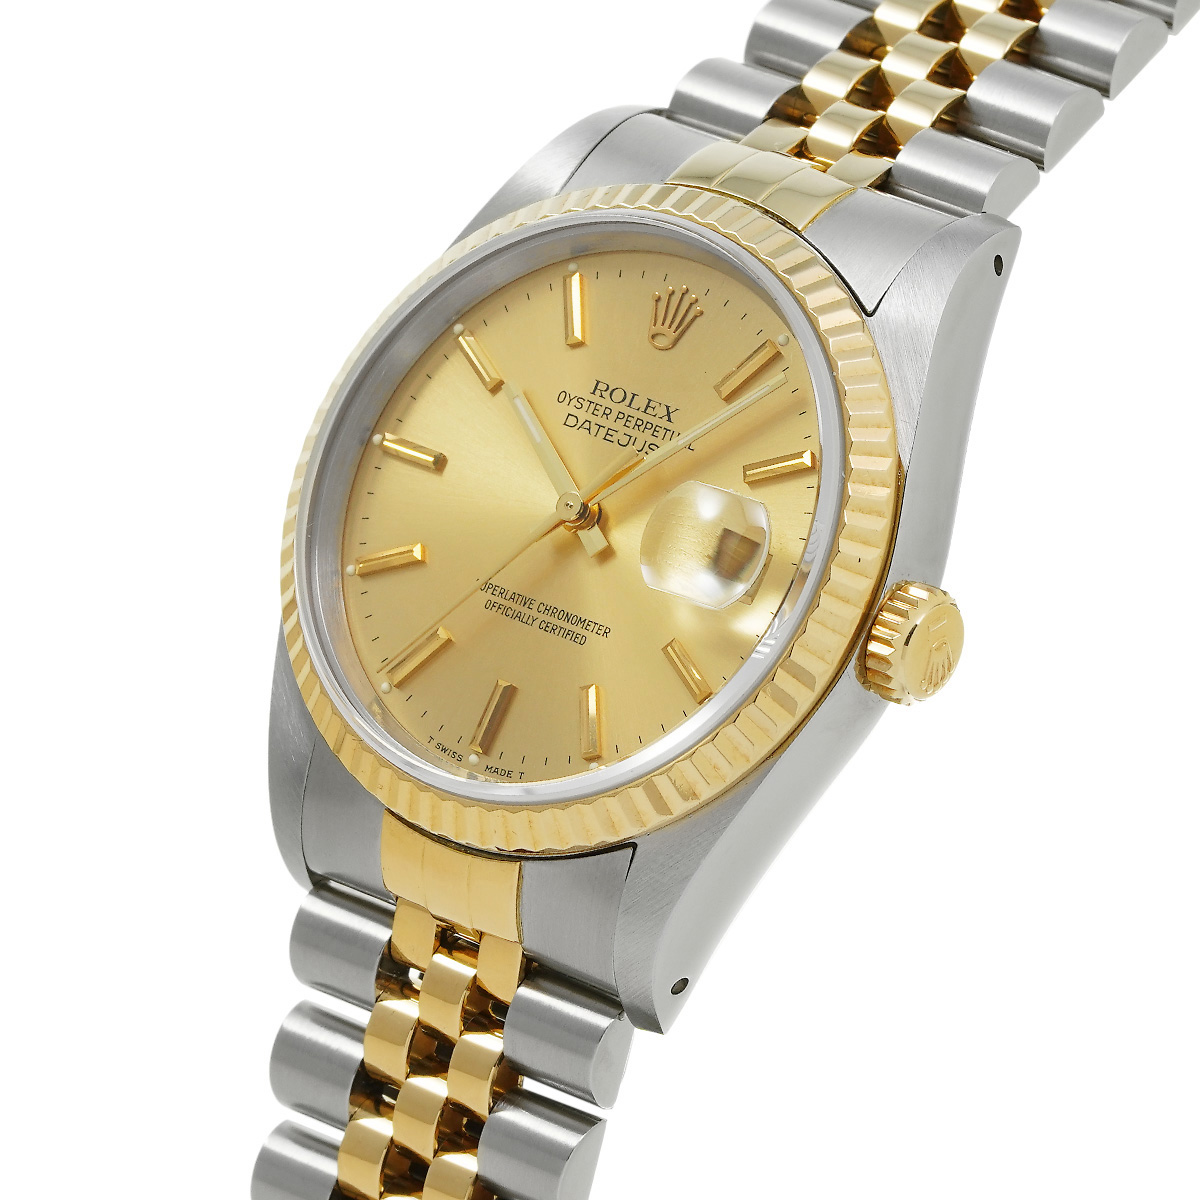  ロレックス ROLEX デイトジャスト 16233 L番(1990年頃製造) シャンパン メンズ 腕時計